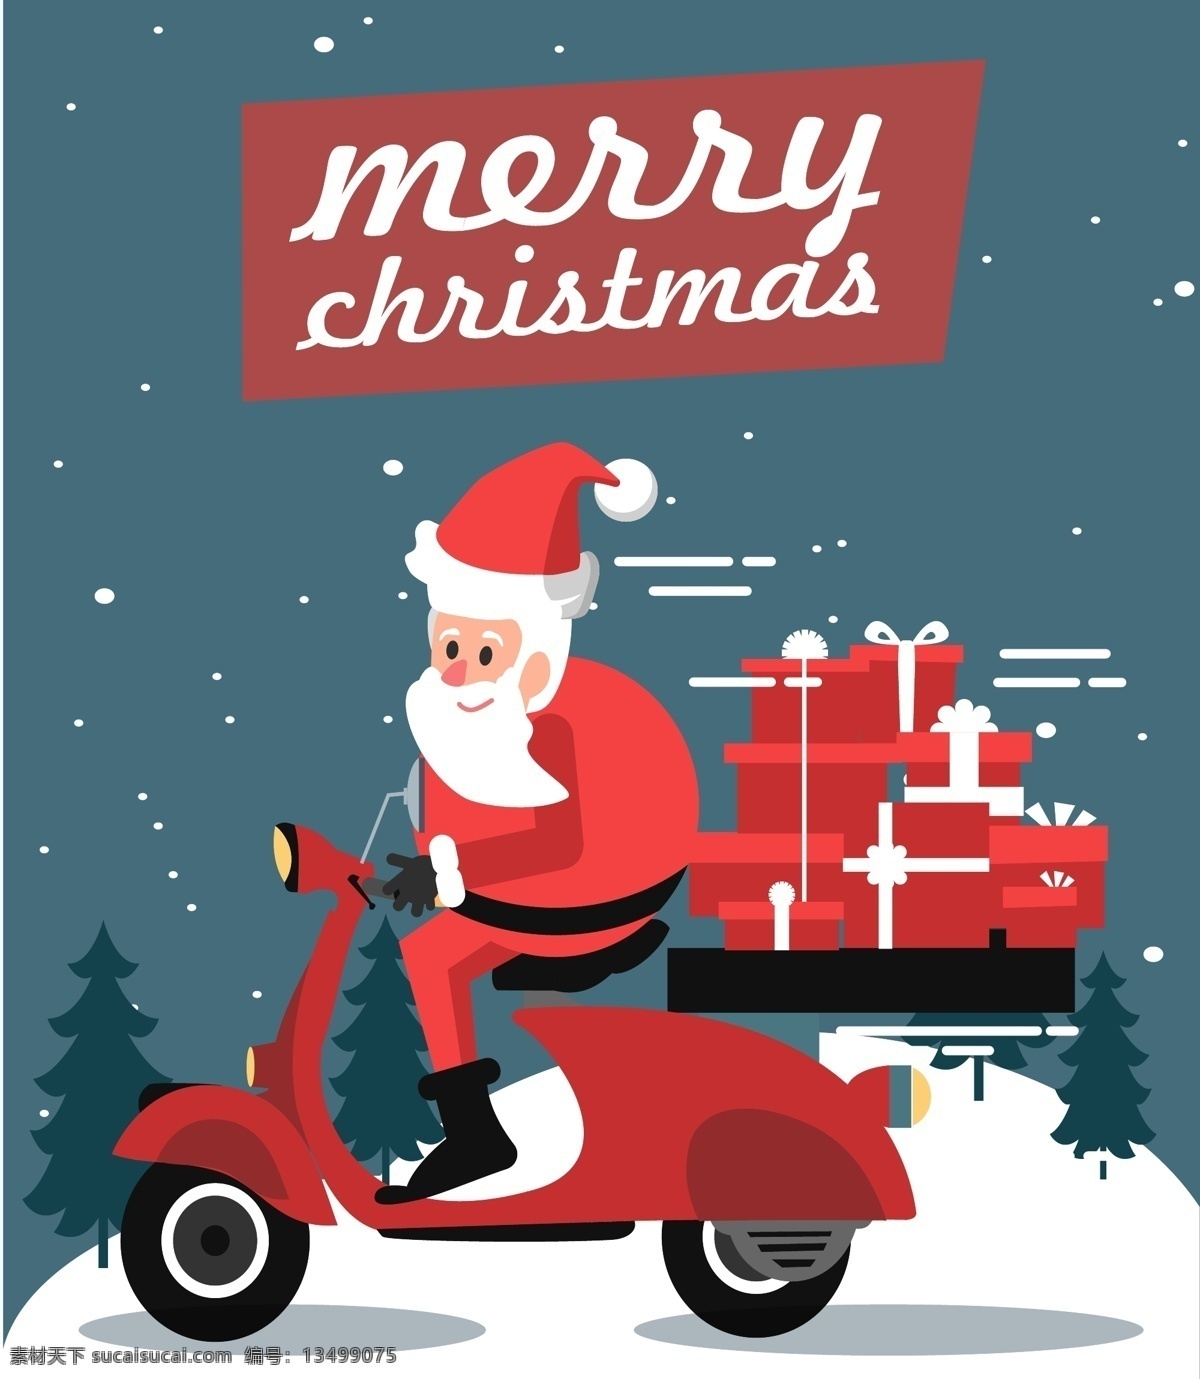 创意 开摩托车送 礼物的圣诞 老人矢量图 merry christmas 摩托车 圣诞老人 礼物 雪花 雪地 树木 圣诞节 矢量图 ai格式